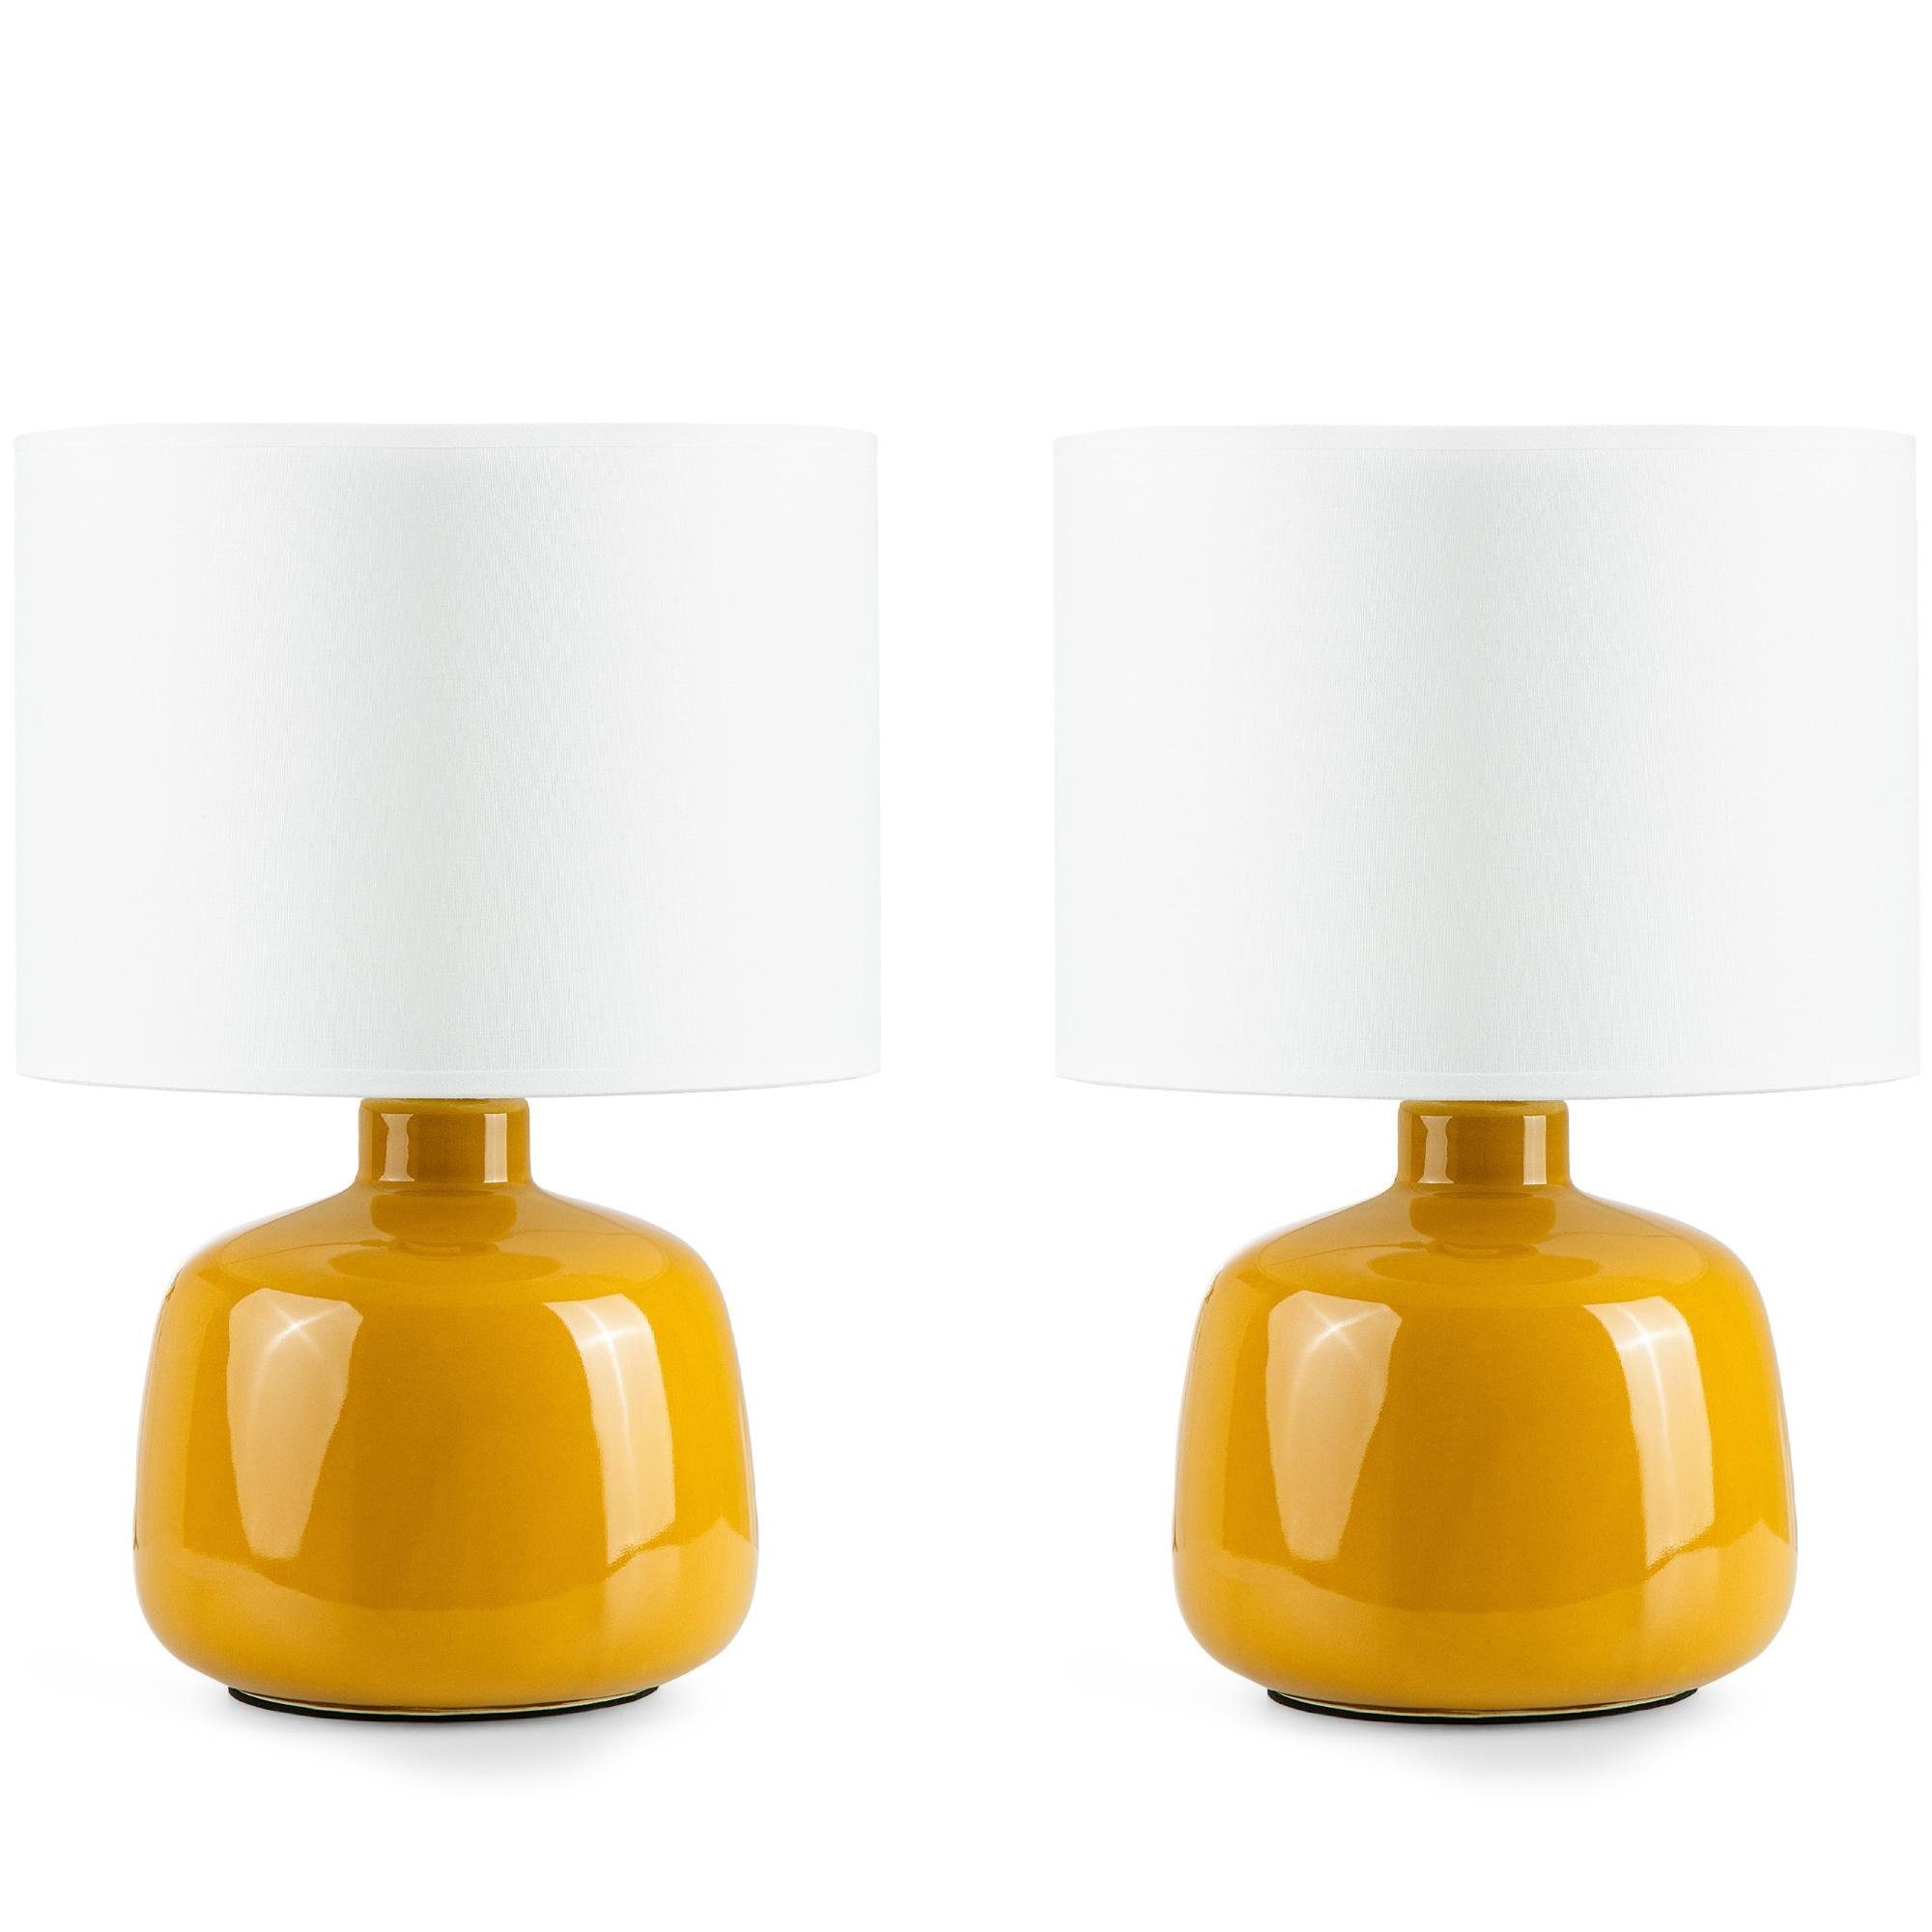 Konsimo Tischleuchte STIVUS Tischleuchten, ohne Leuchtmittel, Keramiksockel, Passt zu jedem Dekor, 2 Stück gelb